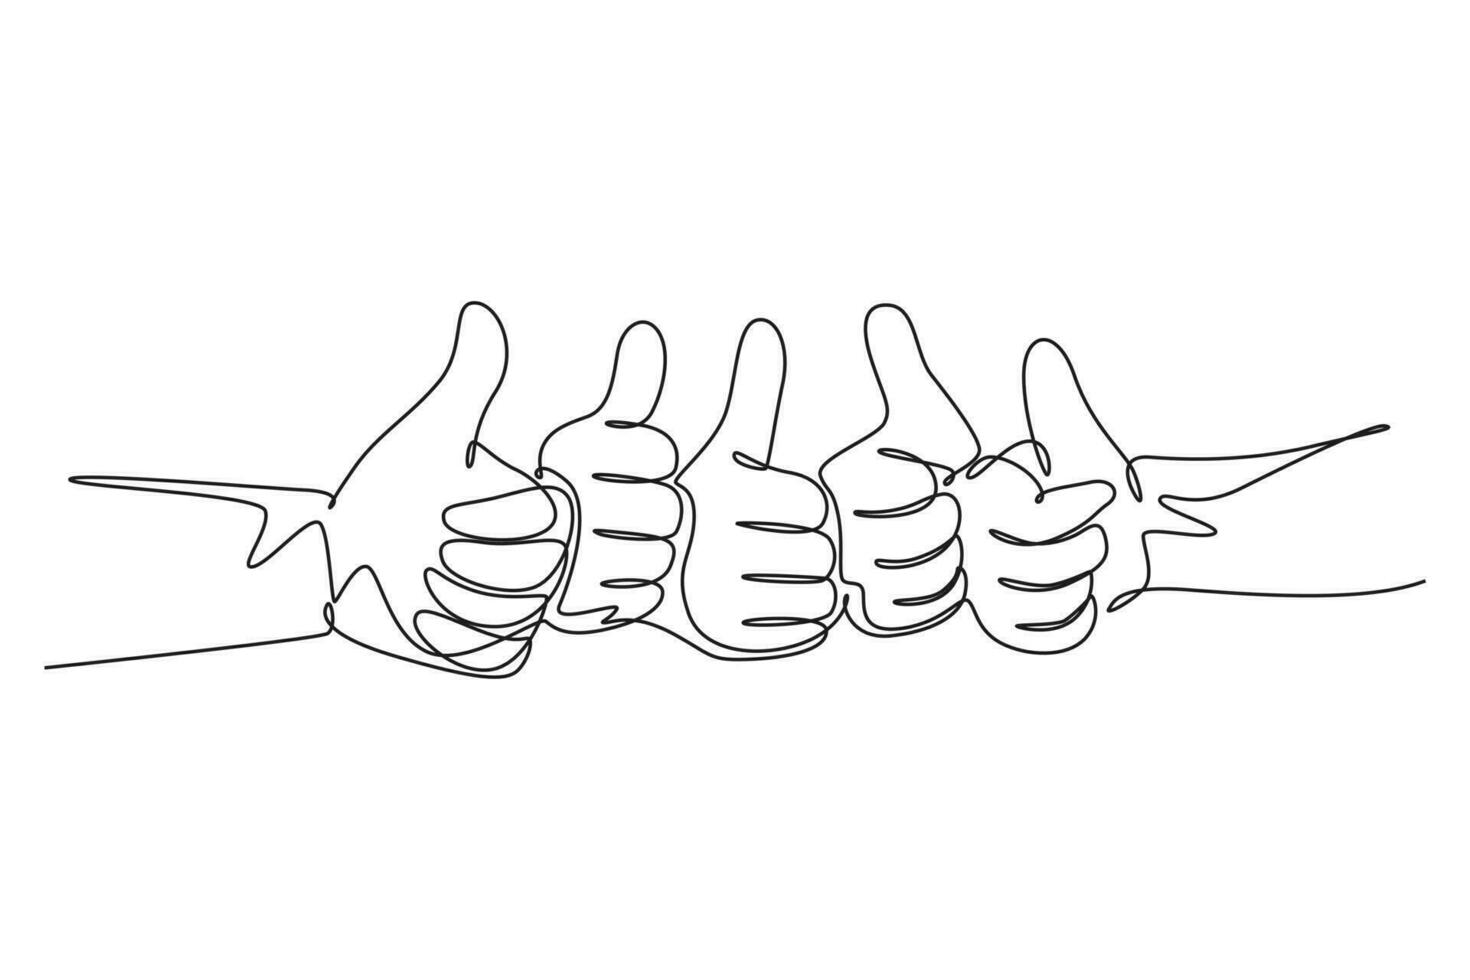 Single einer Linie Zeichnung von Arm Hände mit Daumen oben Geste unterzeichnen. gut Bedienung Exzellenz im Geschäft und Industrie Sektor Symbol Konzept. modern kontinuierlich Linie zeichnen Design Grafik Vektor Illustration